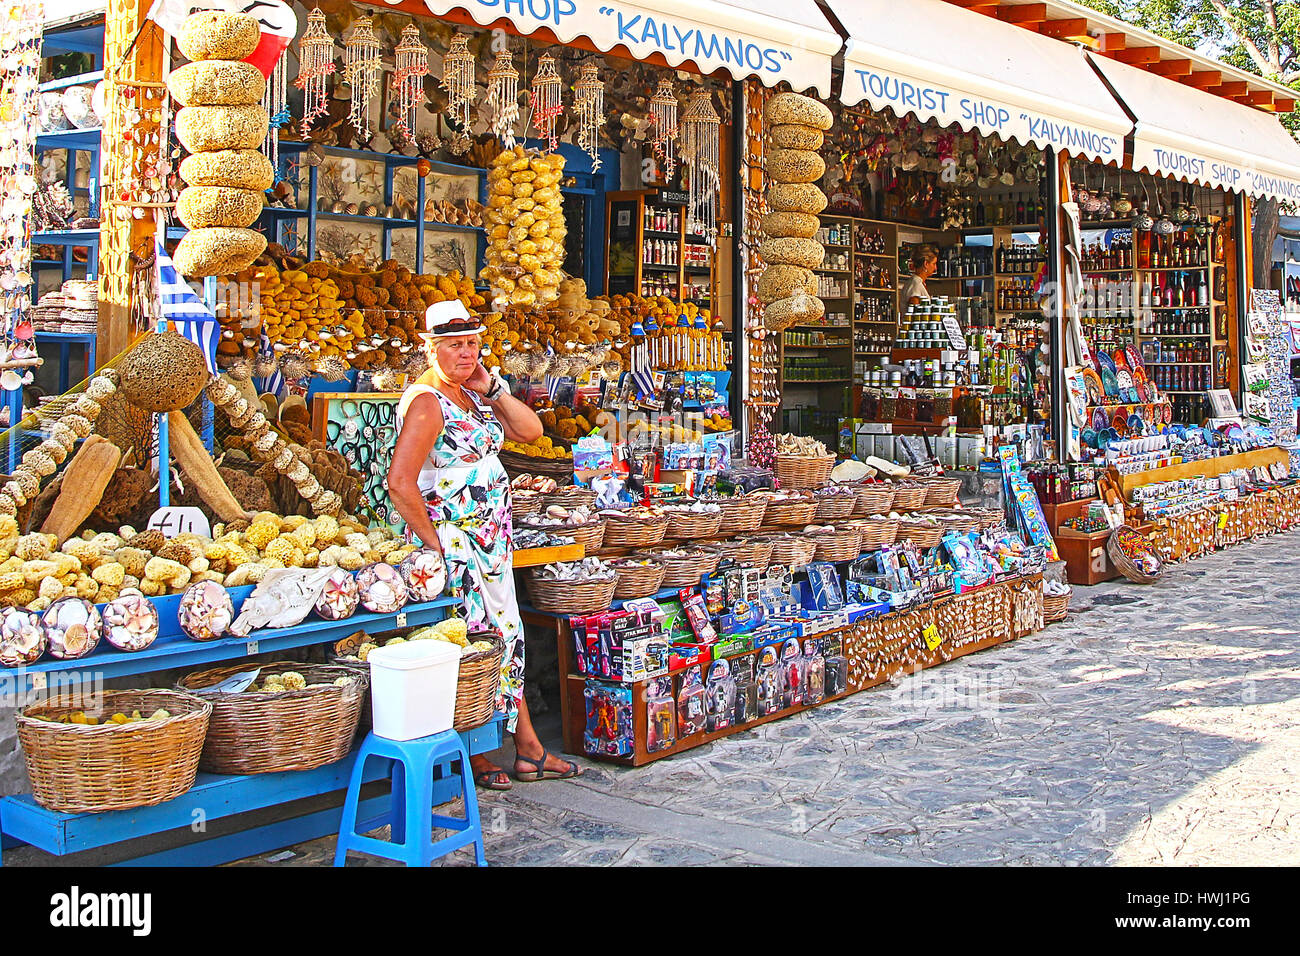 Fier commerçant Grec se tient juste en face de sa boutique vendant des éponges naturelles - photo prise sur l'île grecque de Cos. Banque D'Images